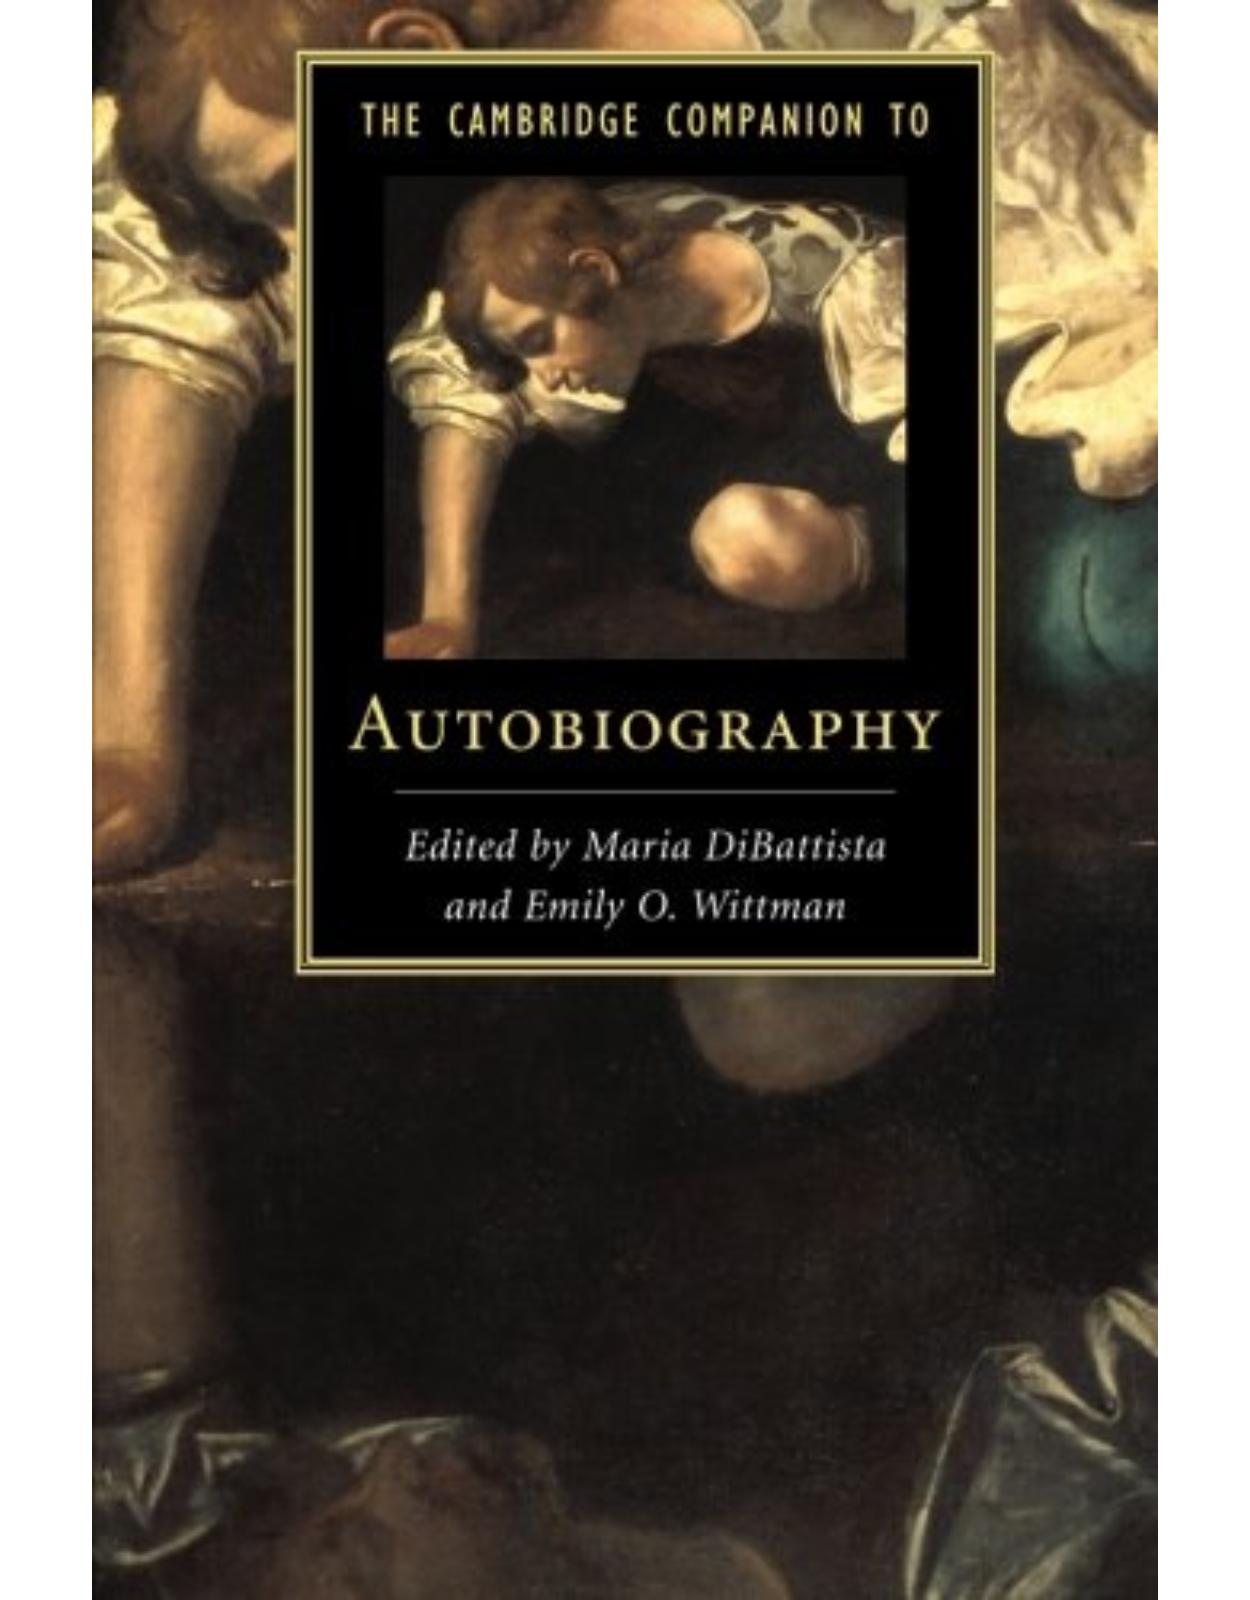 The Cambridge Companion to Autobiography (Cambridge Companions to Literature)